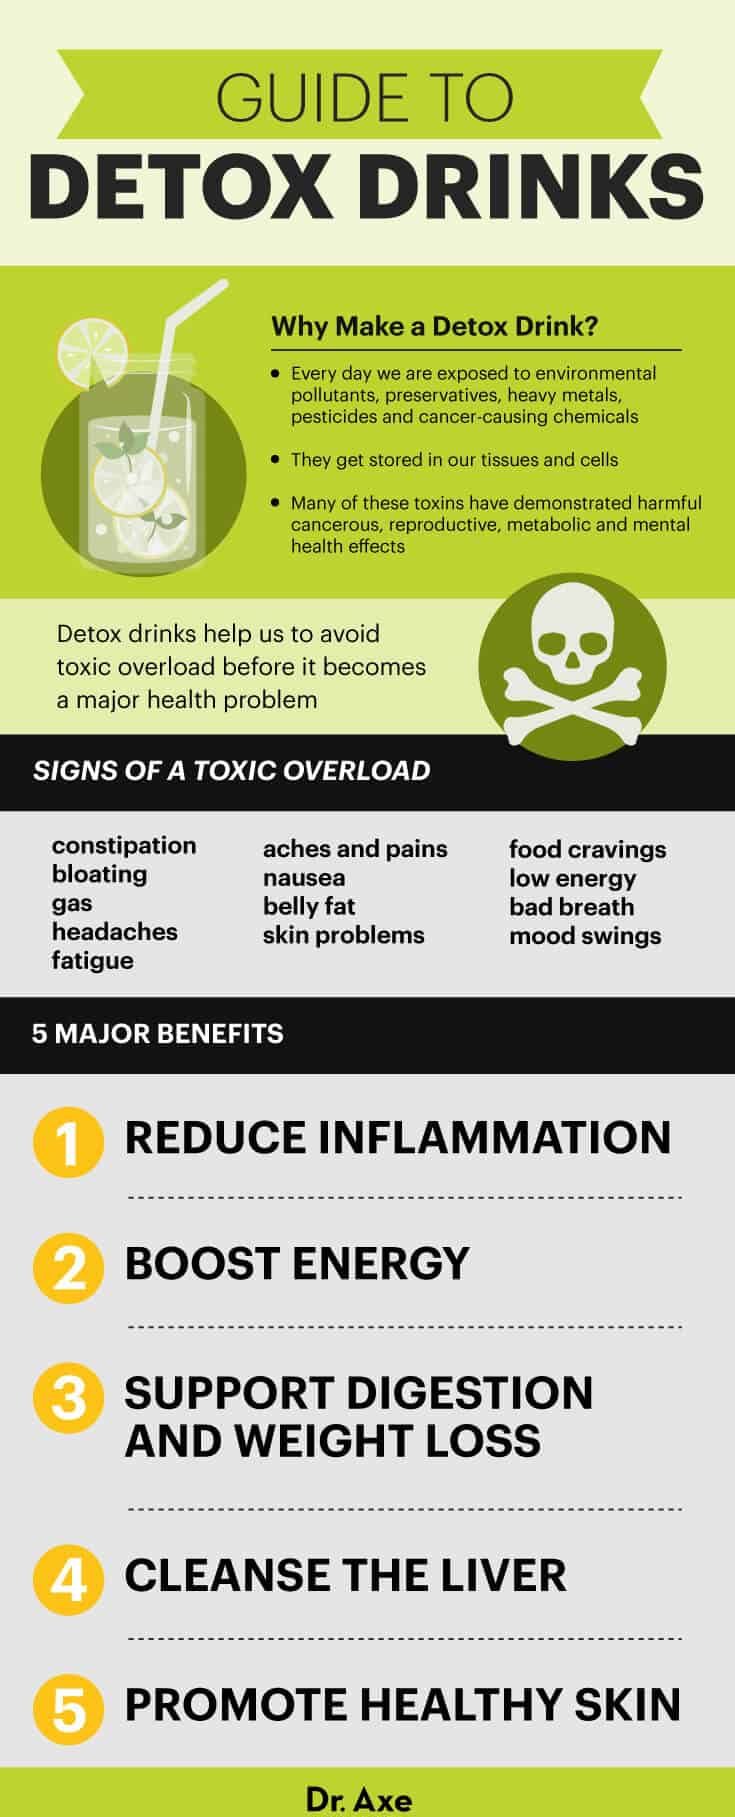 Detox drinks guide - Dr. Axe